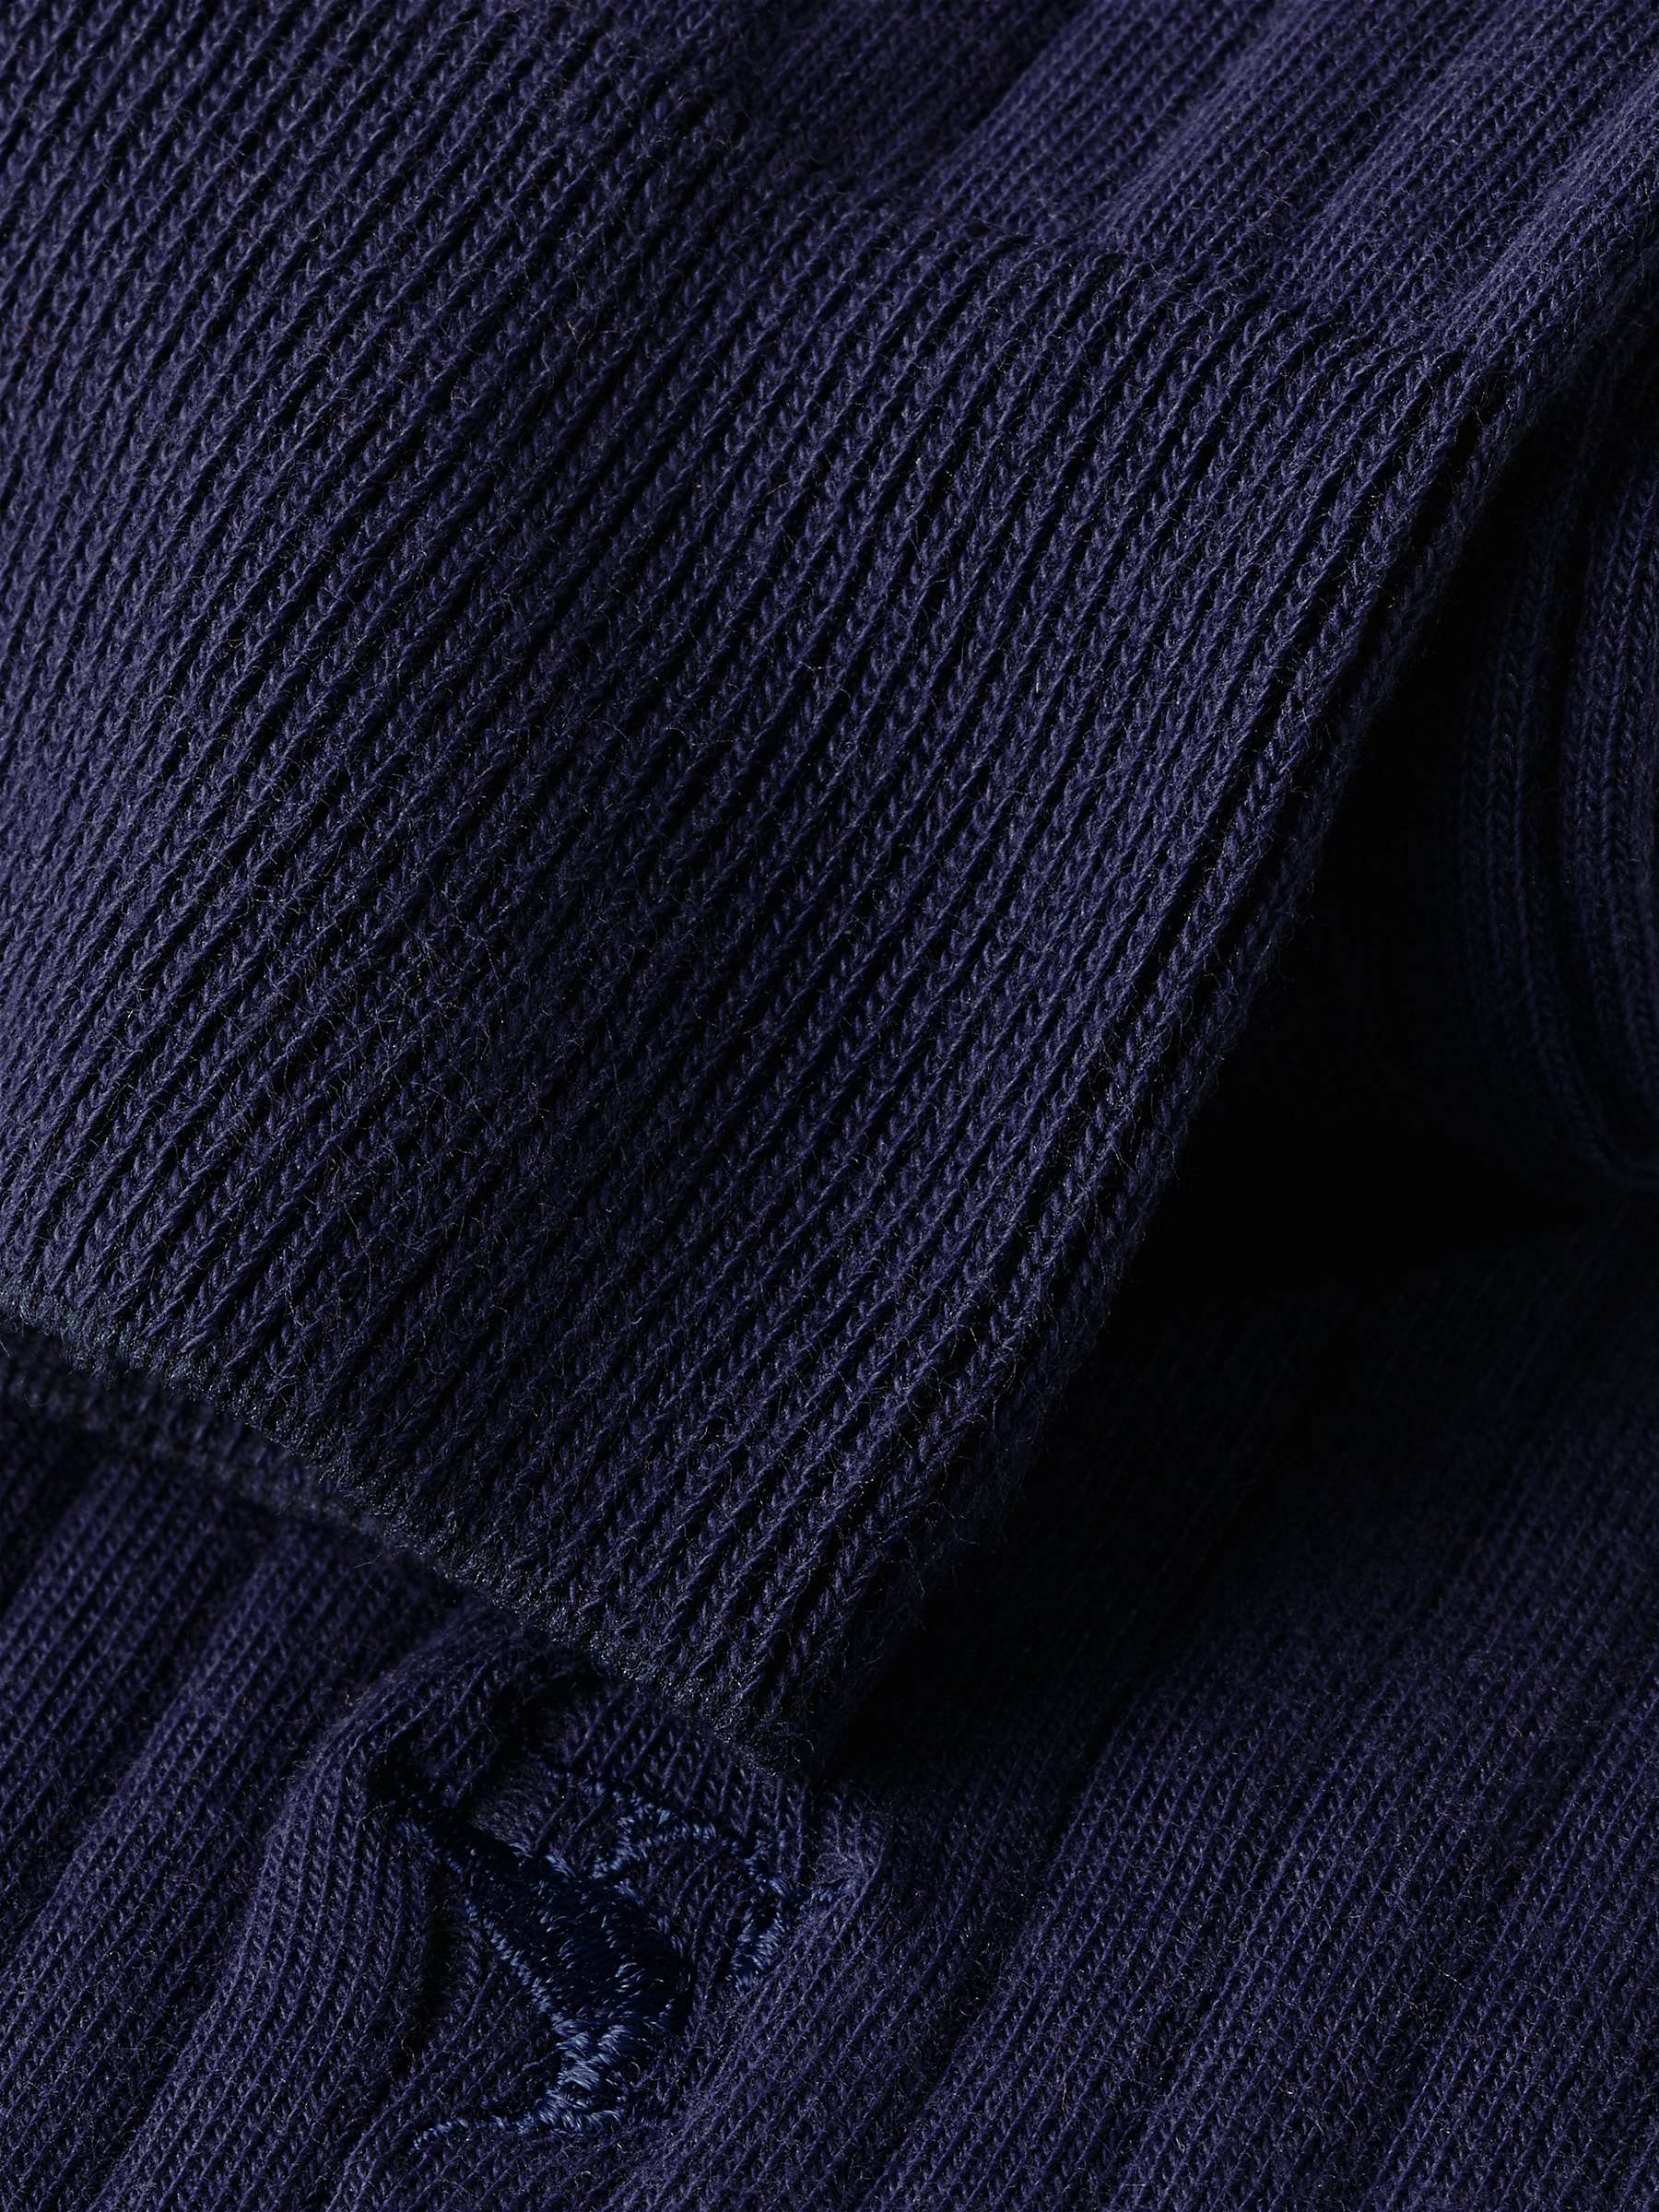 Buy Charles Tyrwhitt Cotton Blend Ribbed Socks, Navy Online at johnlewis.com